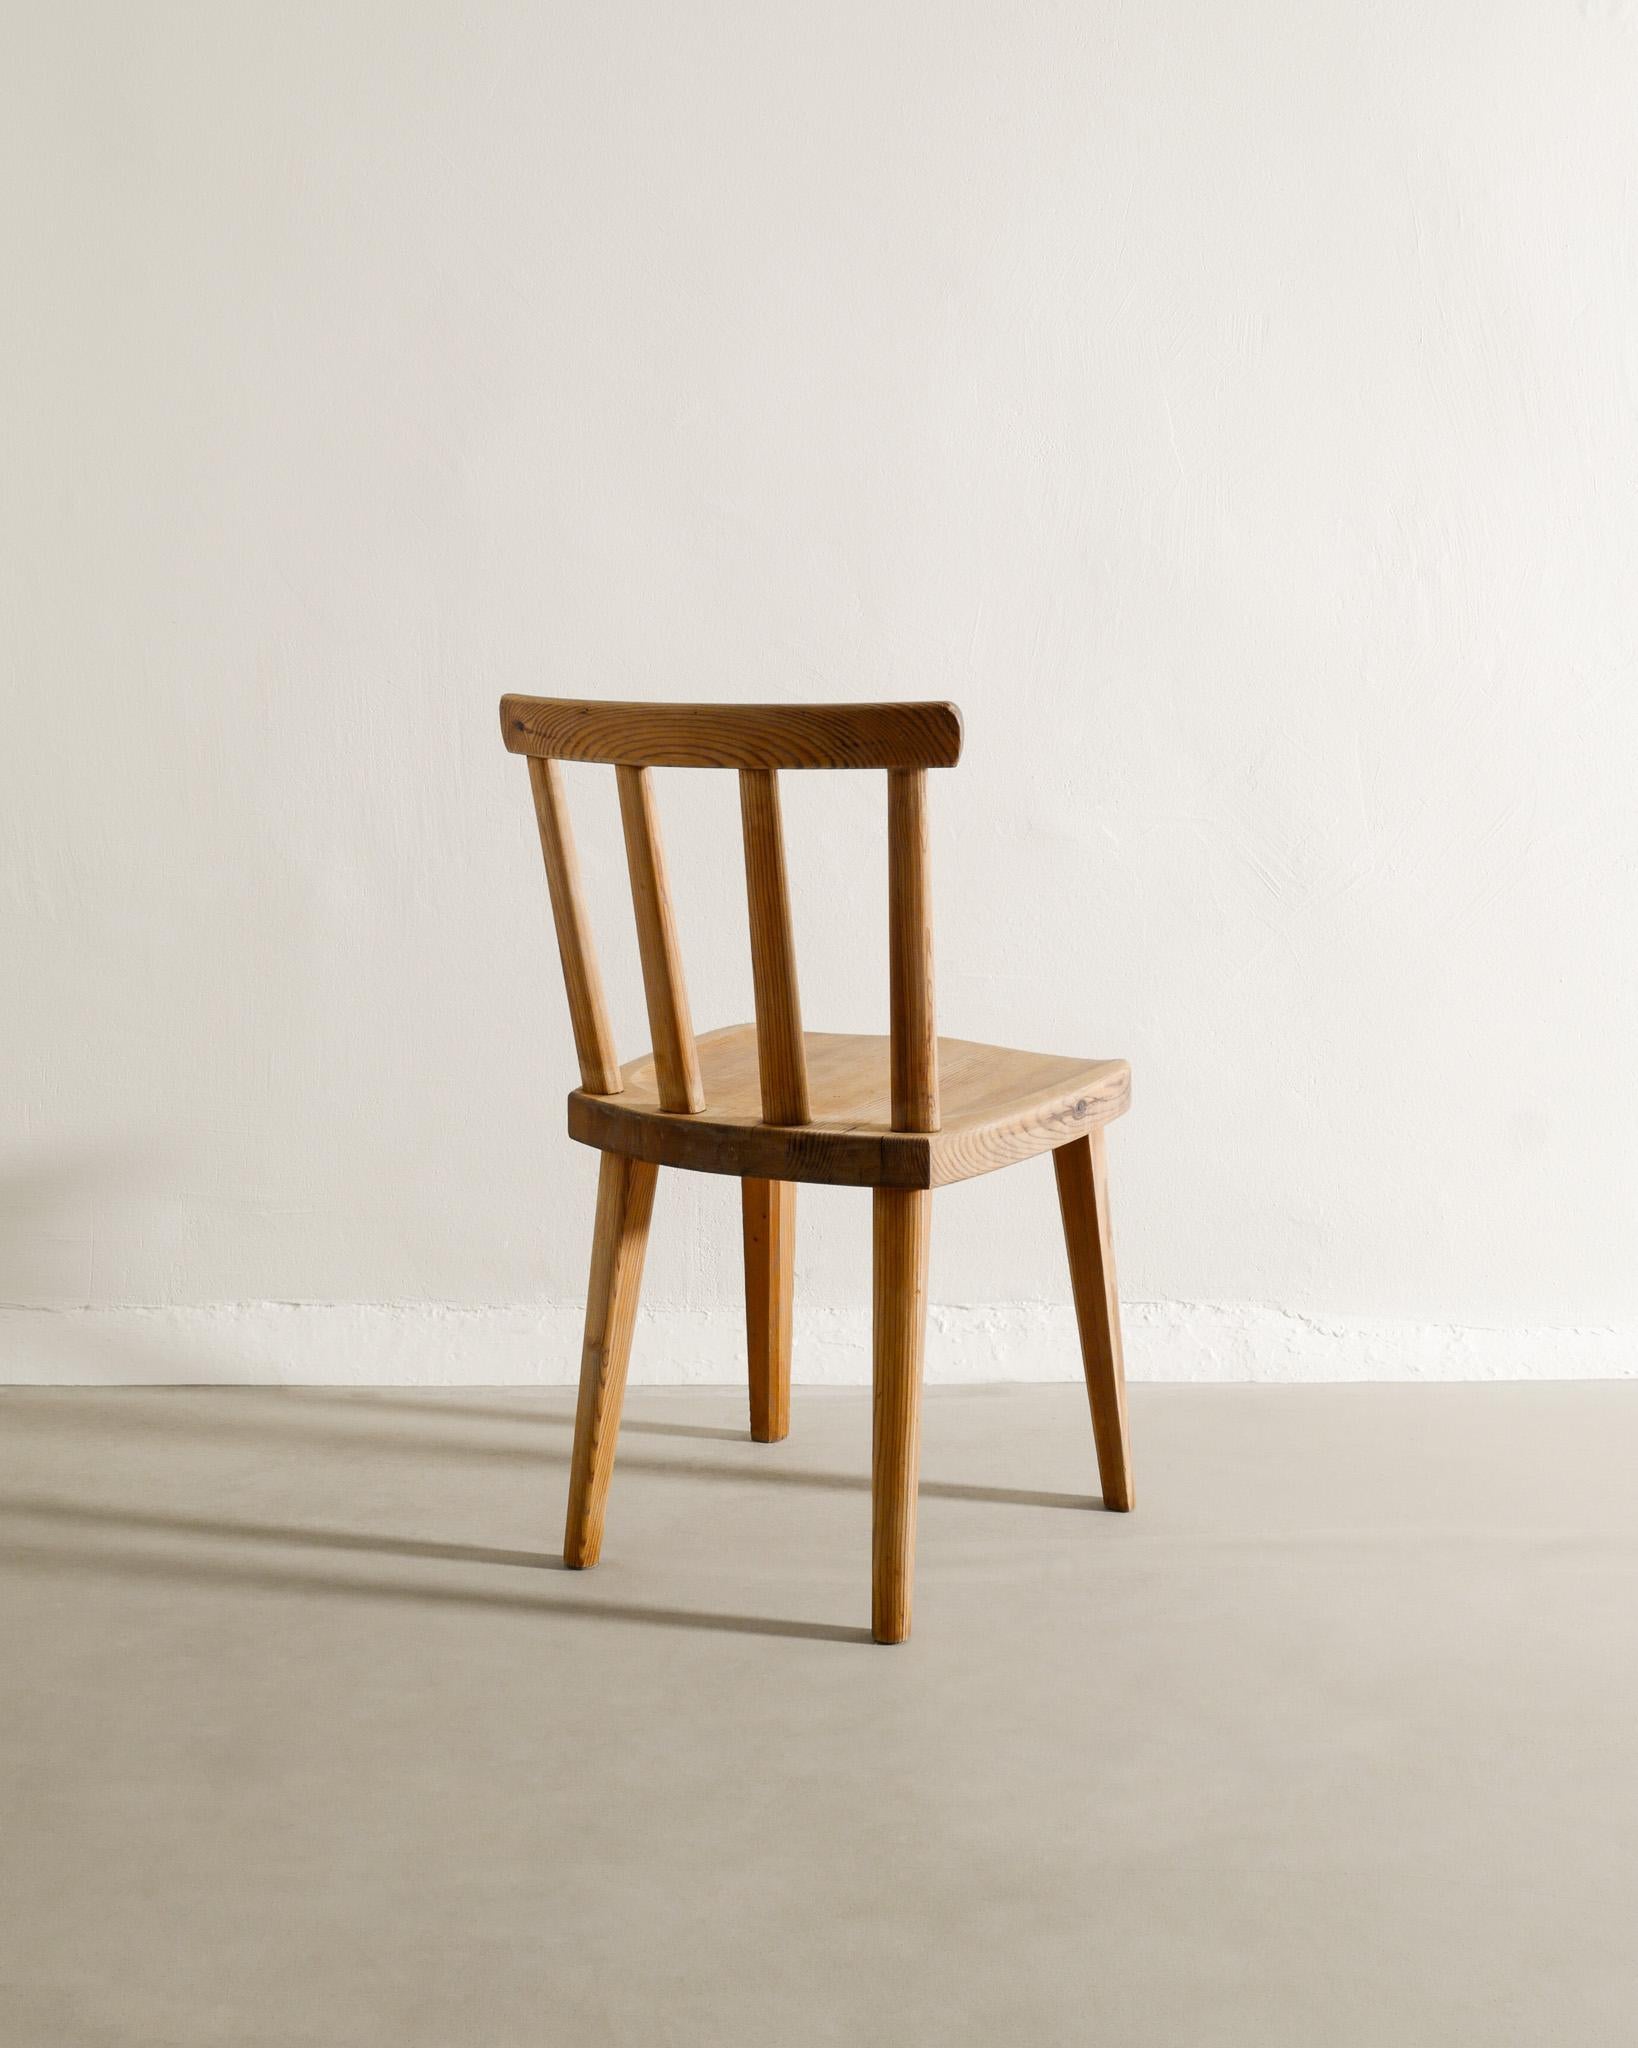 Einzelner Utö-Stuhl aus Kiefernholz von Axel Einar Hjorth für NK Sweden, 1932 (Skandinavische Moderne)